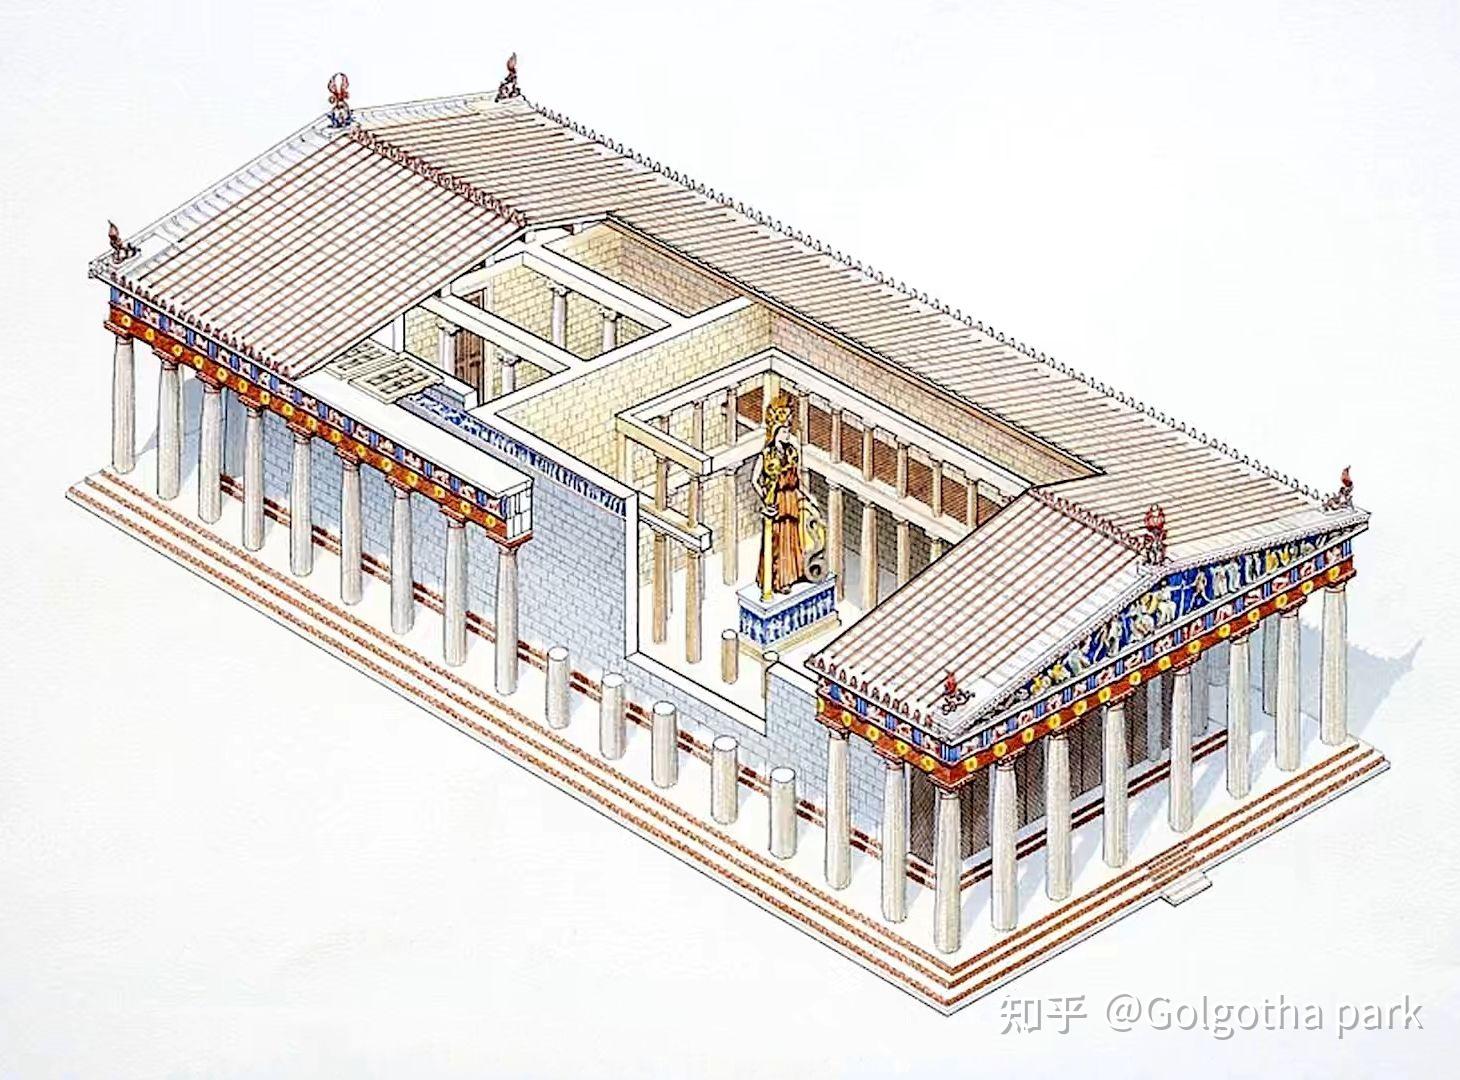 罗马神庙和希腊神庙的内部结构是否相同? 